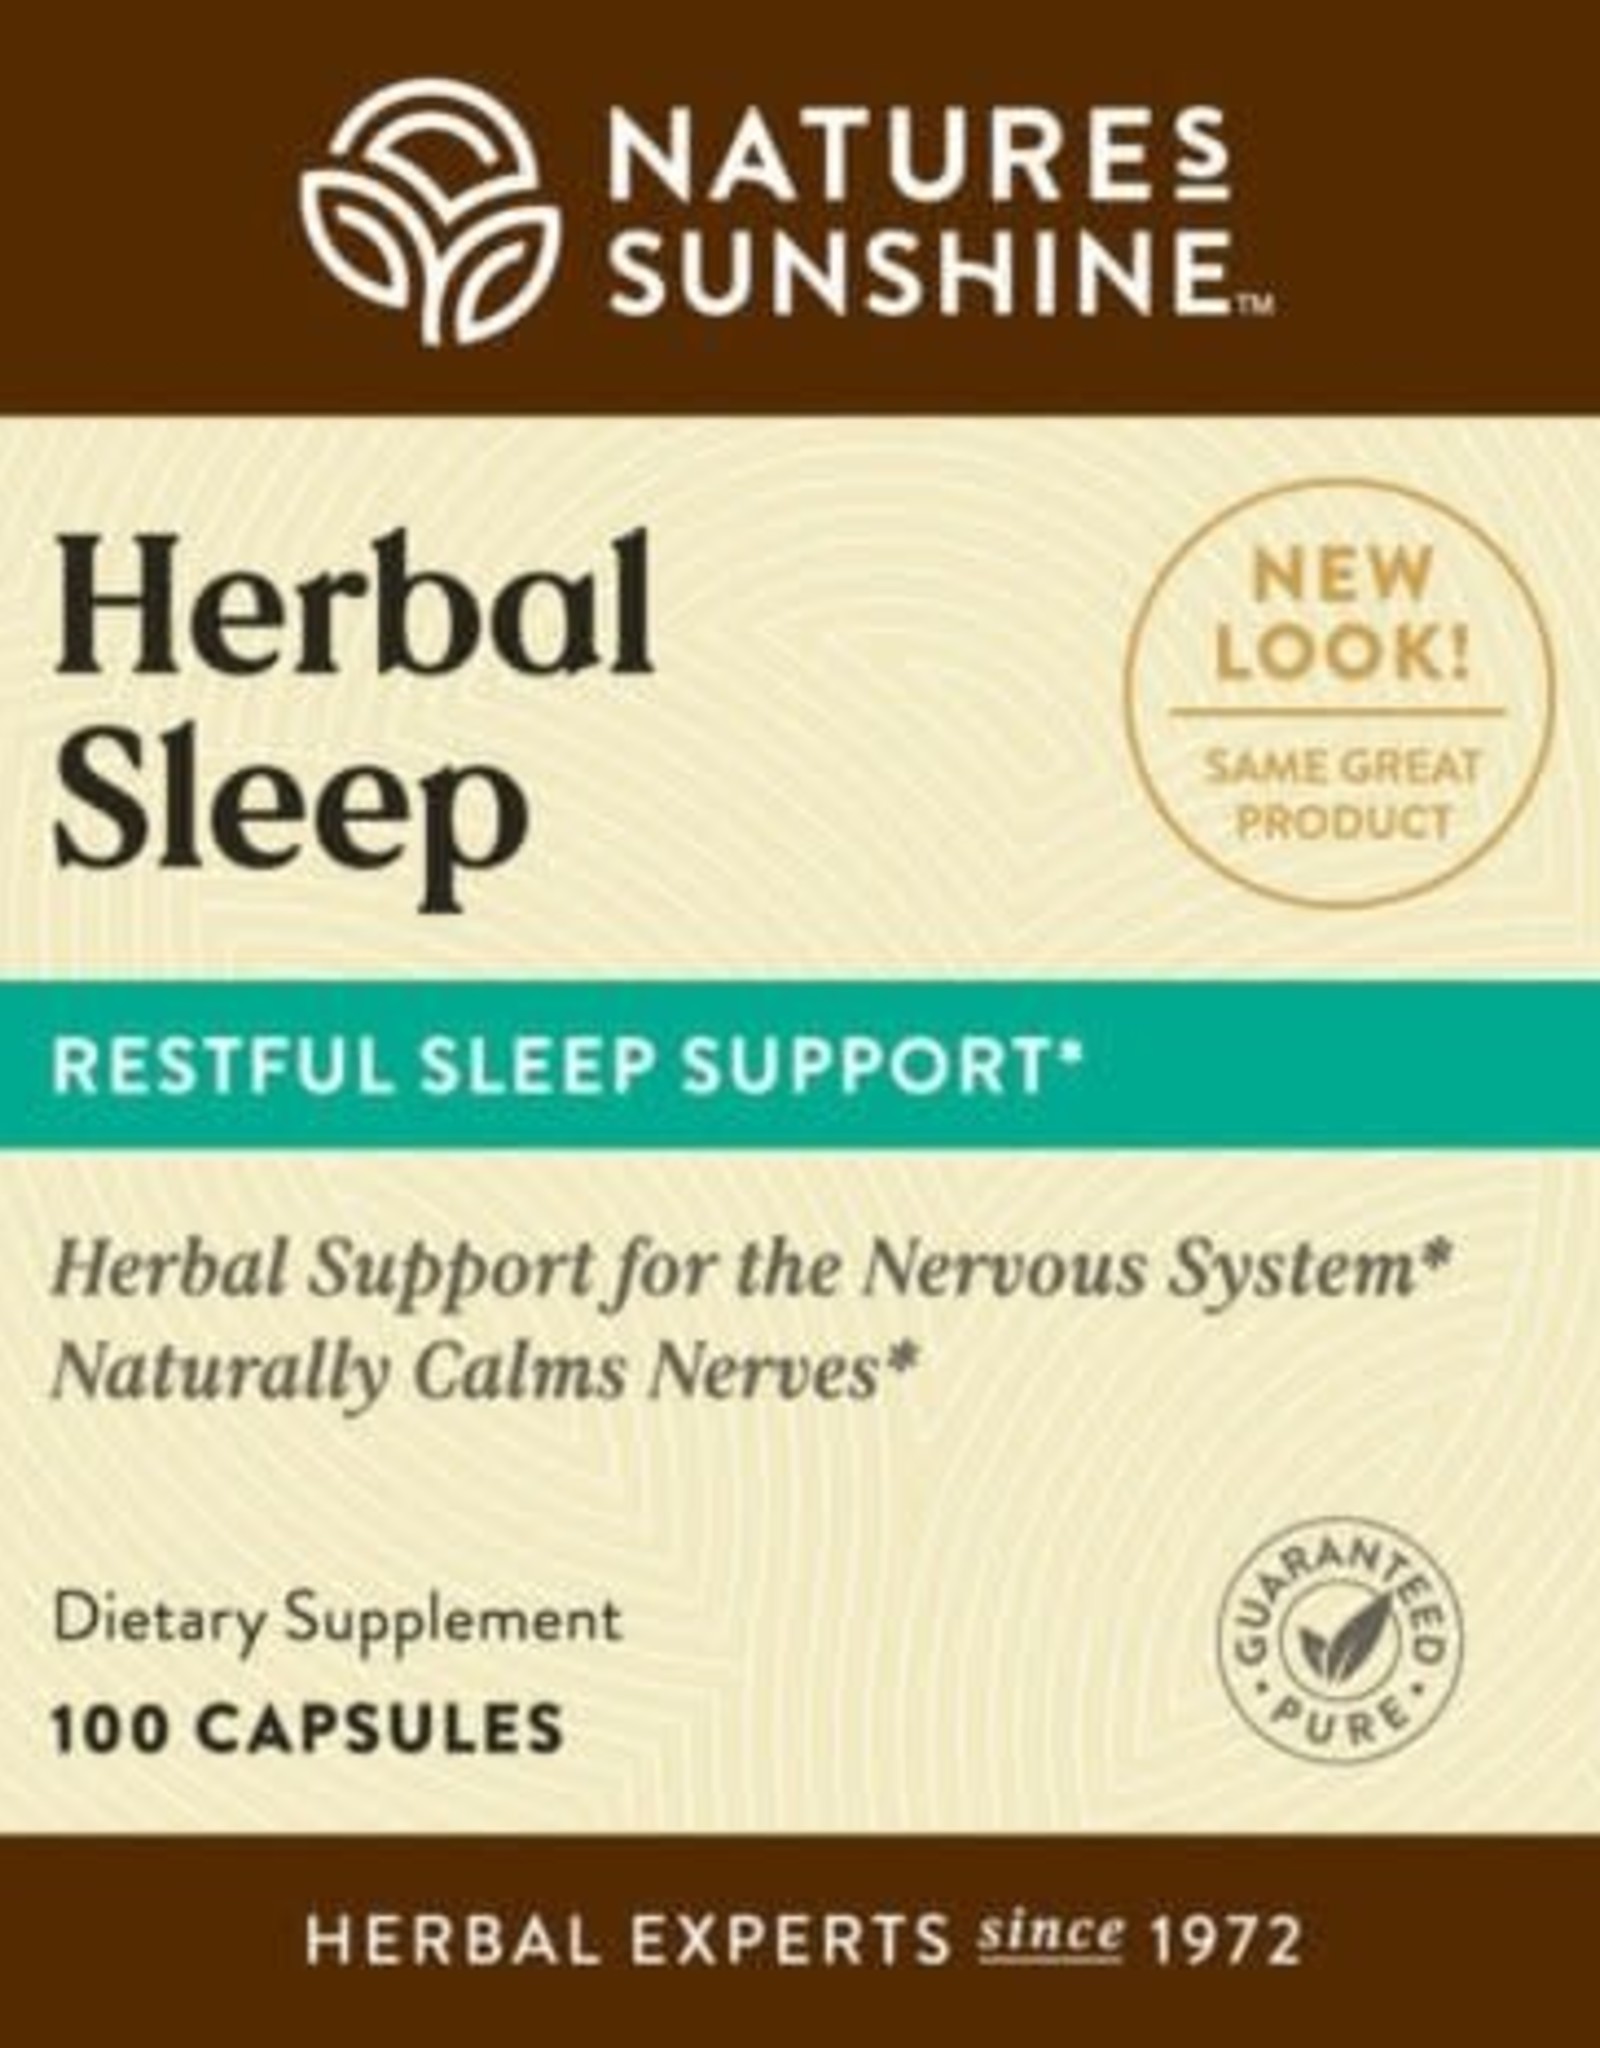 Nature's Sunshine Herbal Sleep (100 caps)*